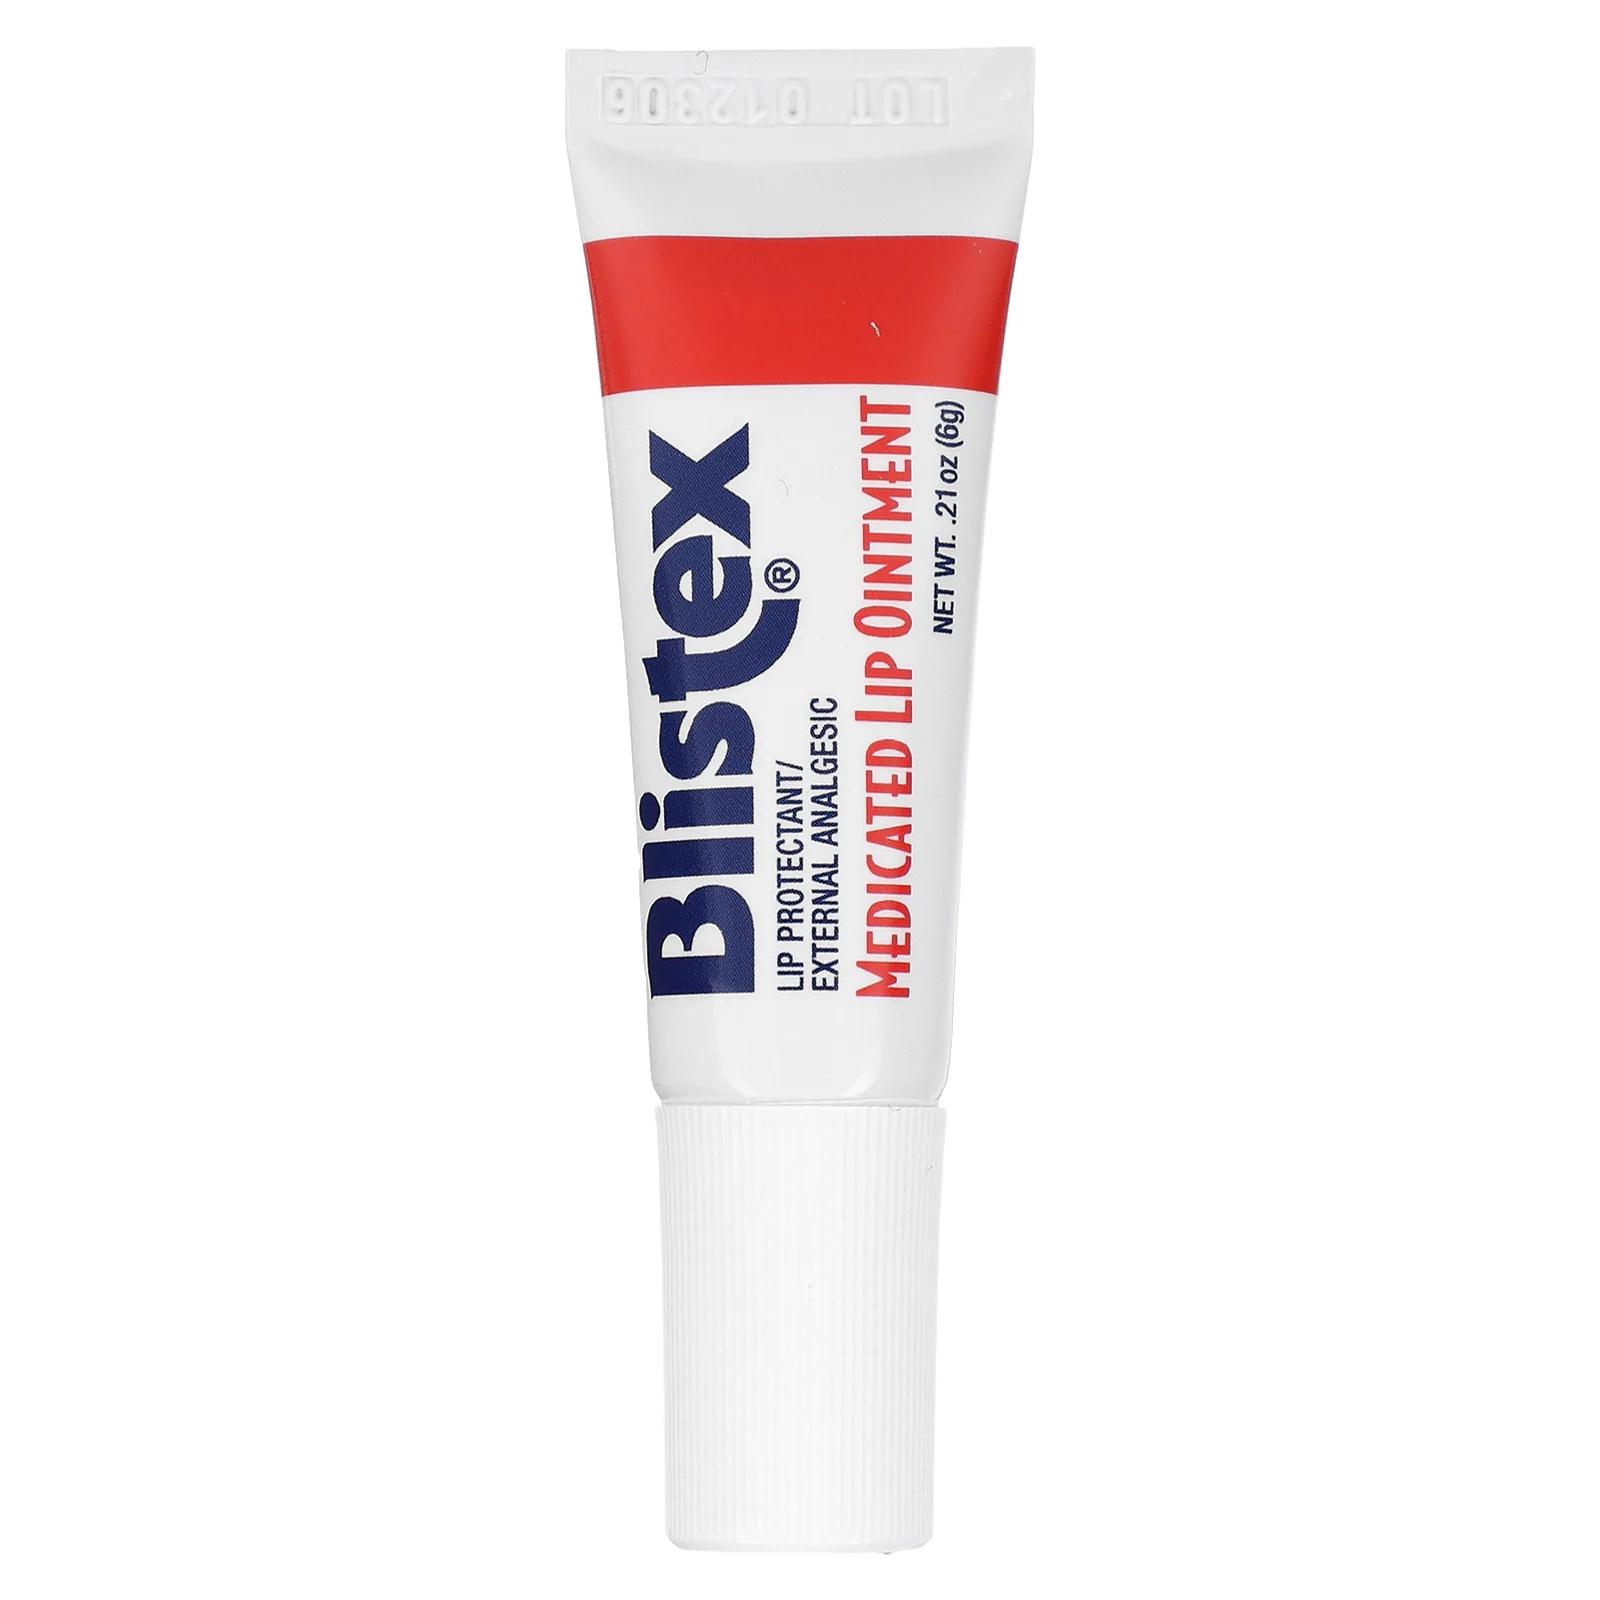 Blistex Заживляющая мазь для губ .21 унций (6 г) цена и фото